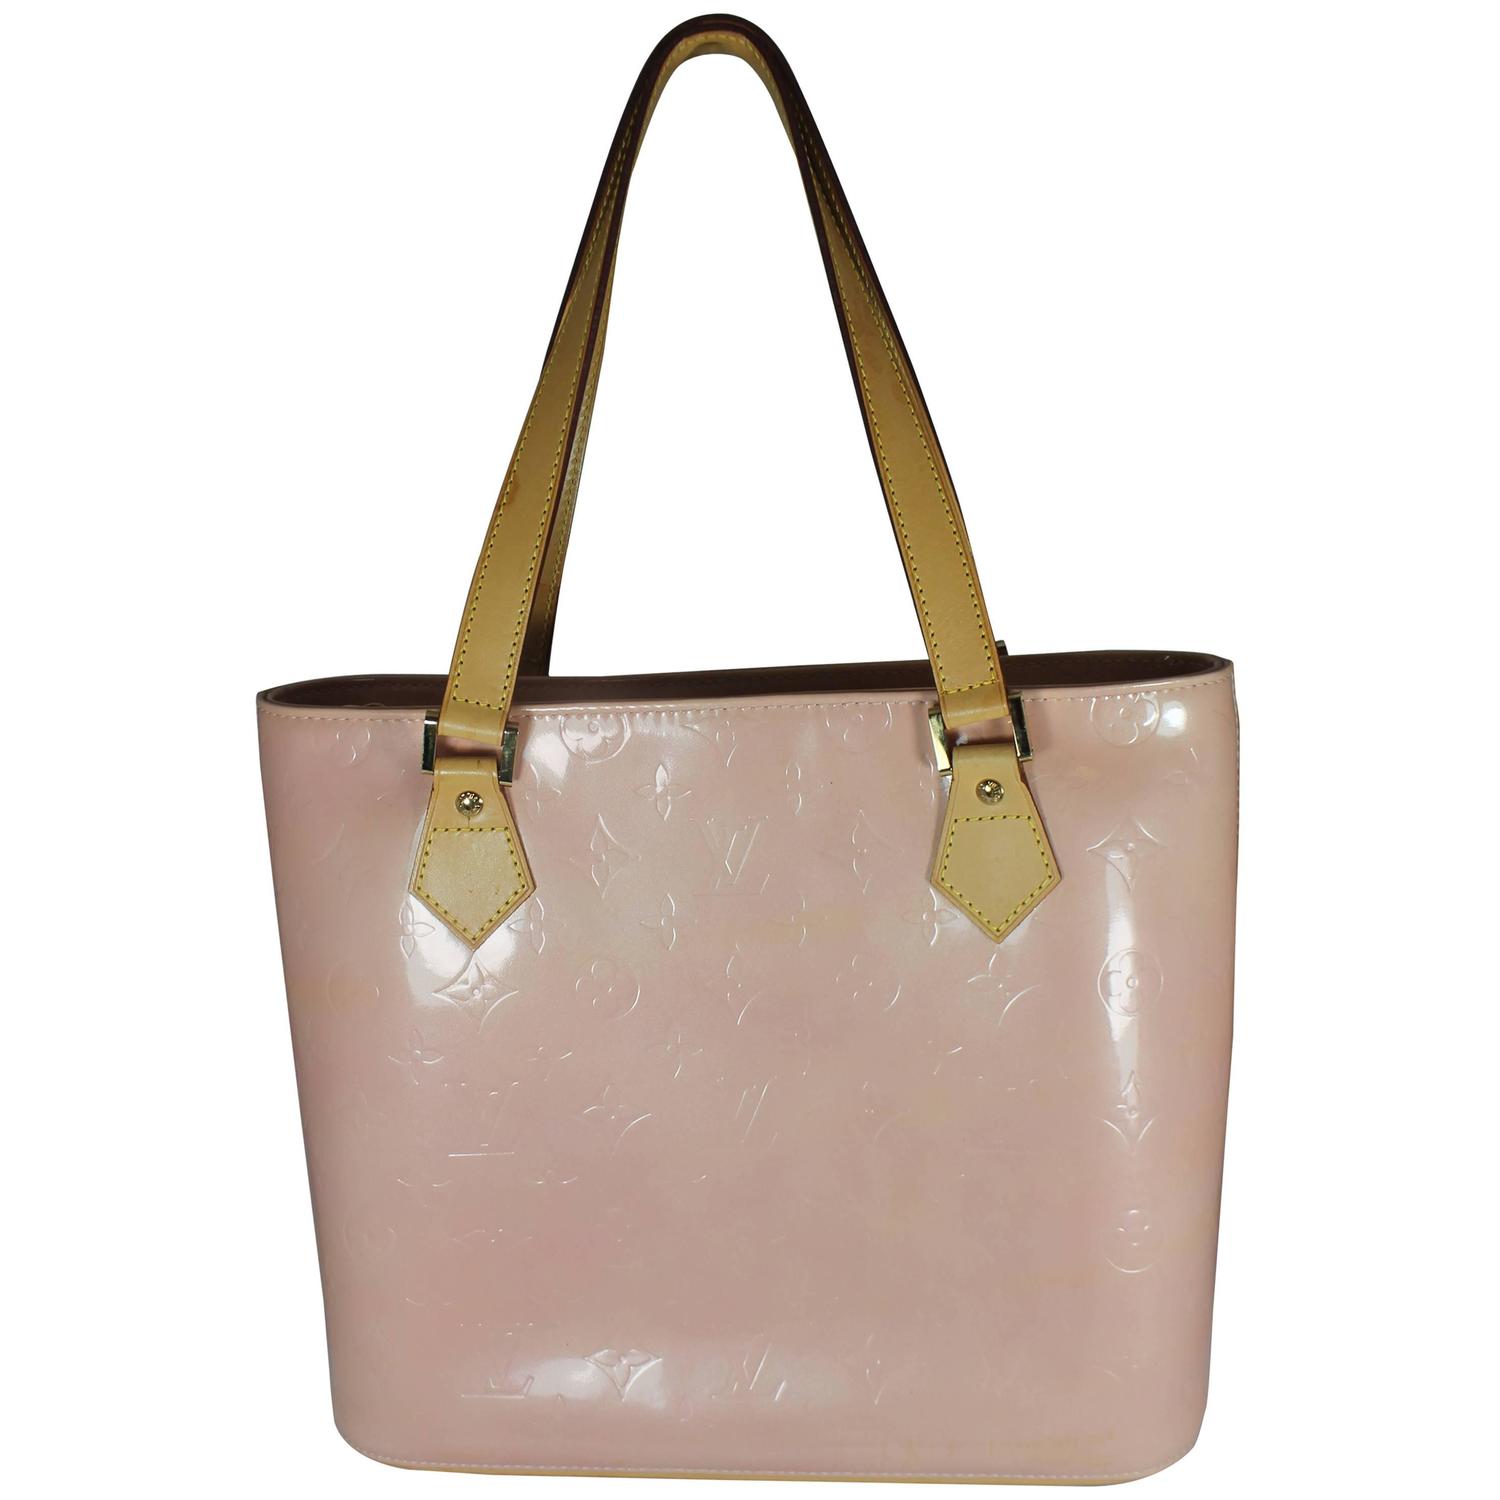 Louis Vuitton Pink Vernis Monogram Shoulder Bag - 1999 - GHW For Sale at 1stdibs